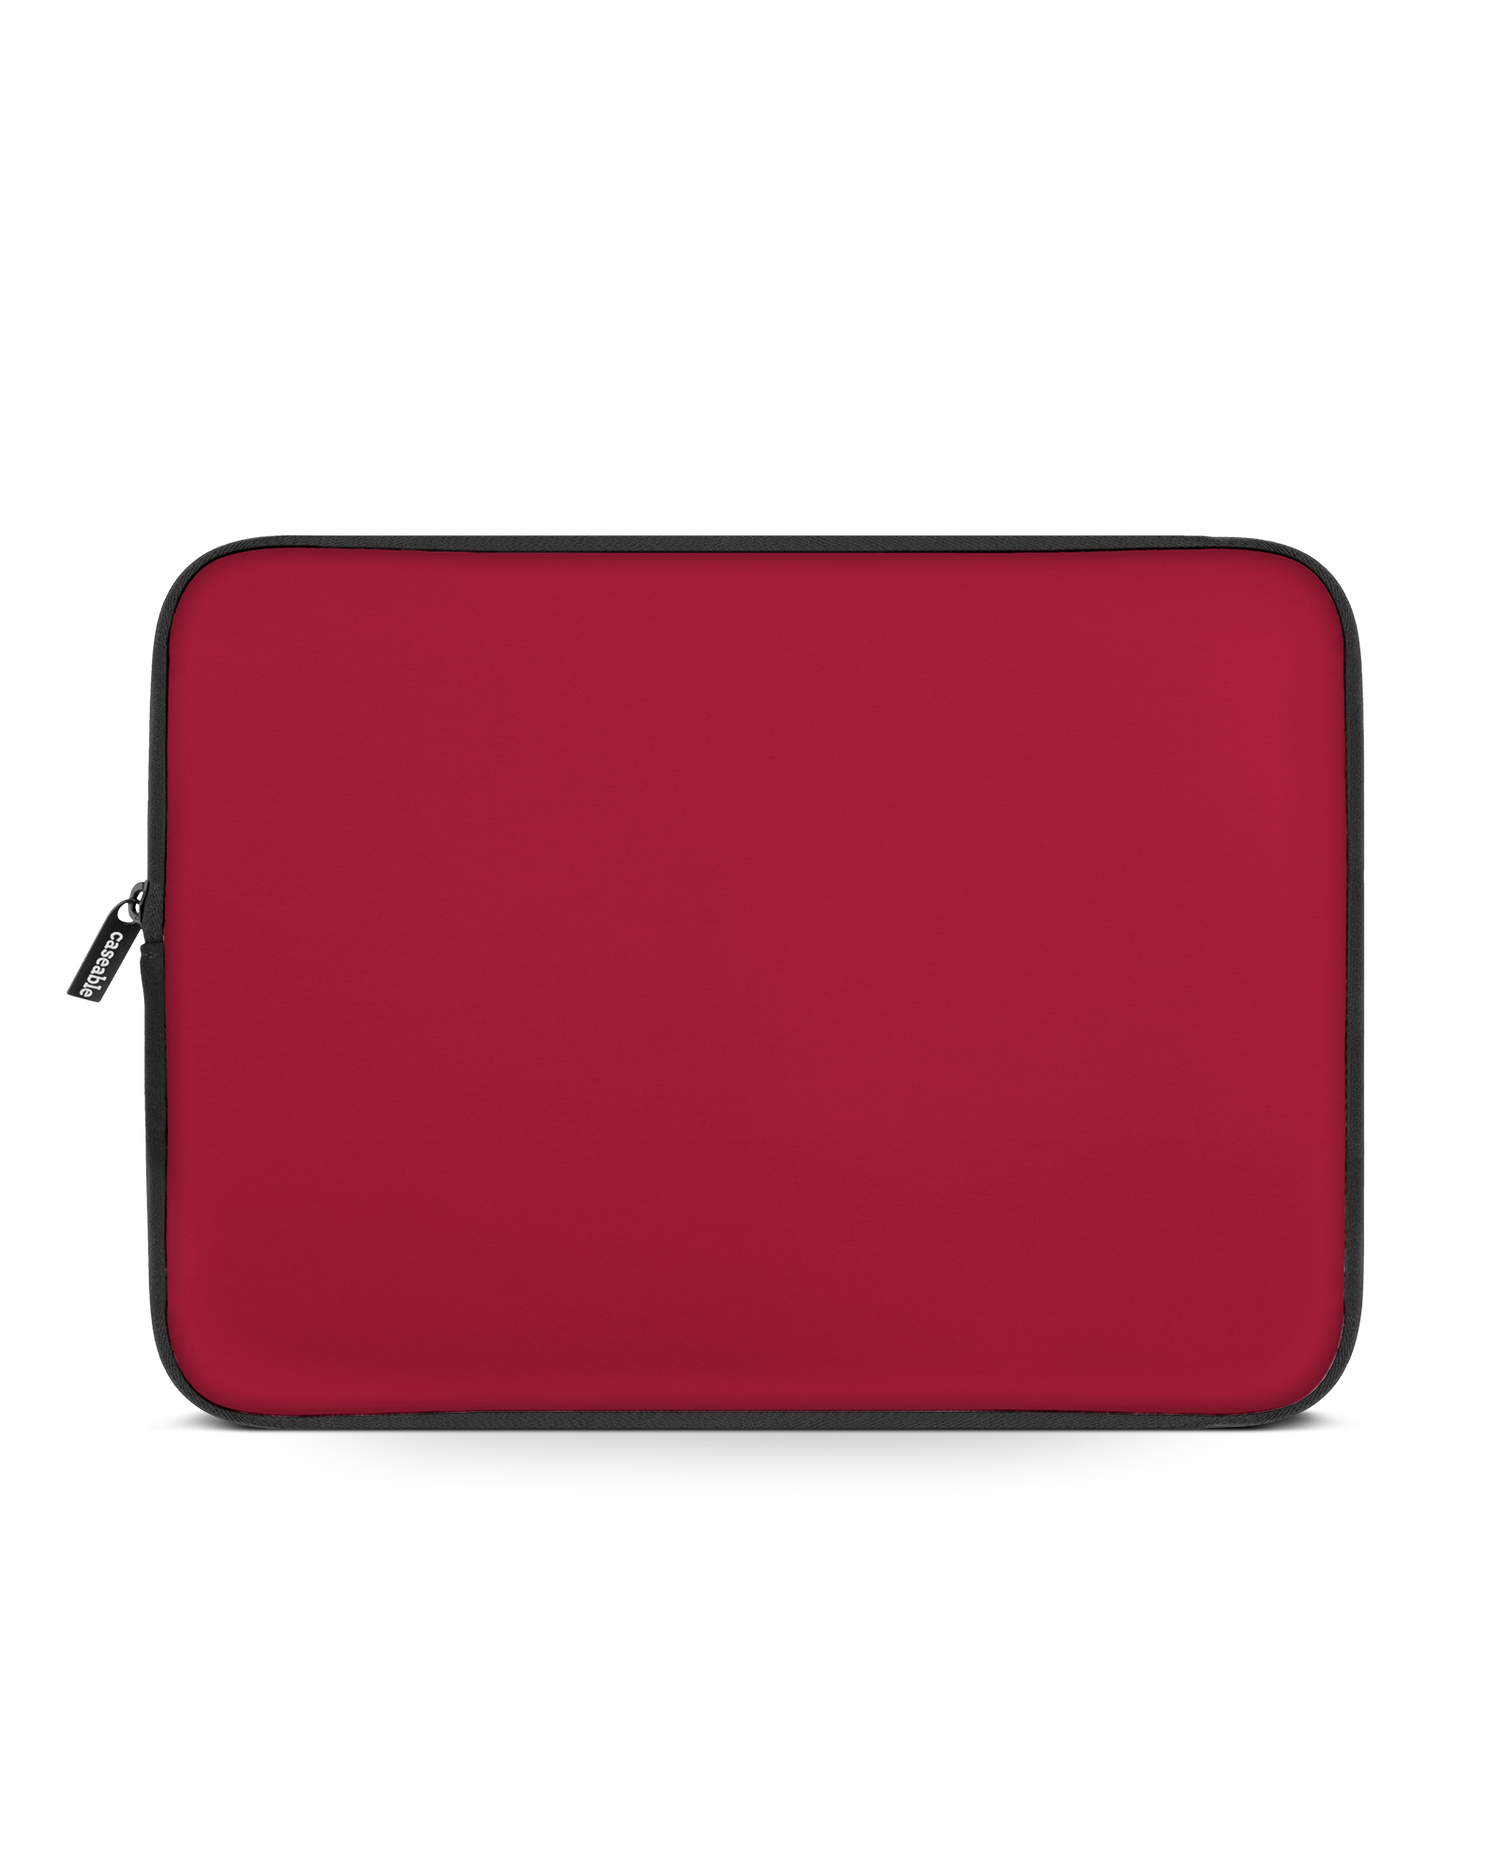 RED Laptophülle 15 Zoll: Vorderansicht